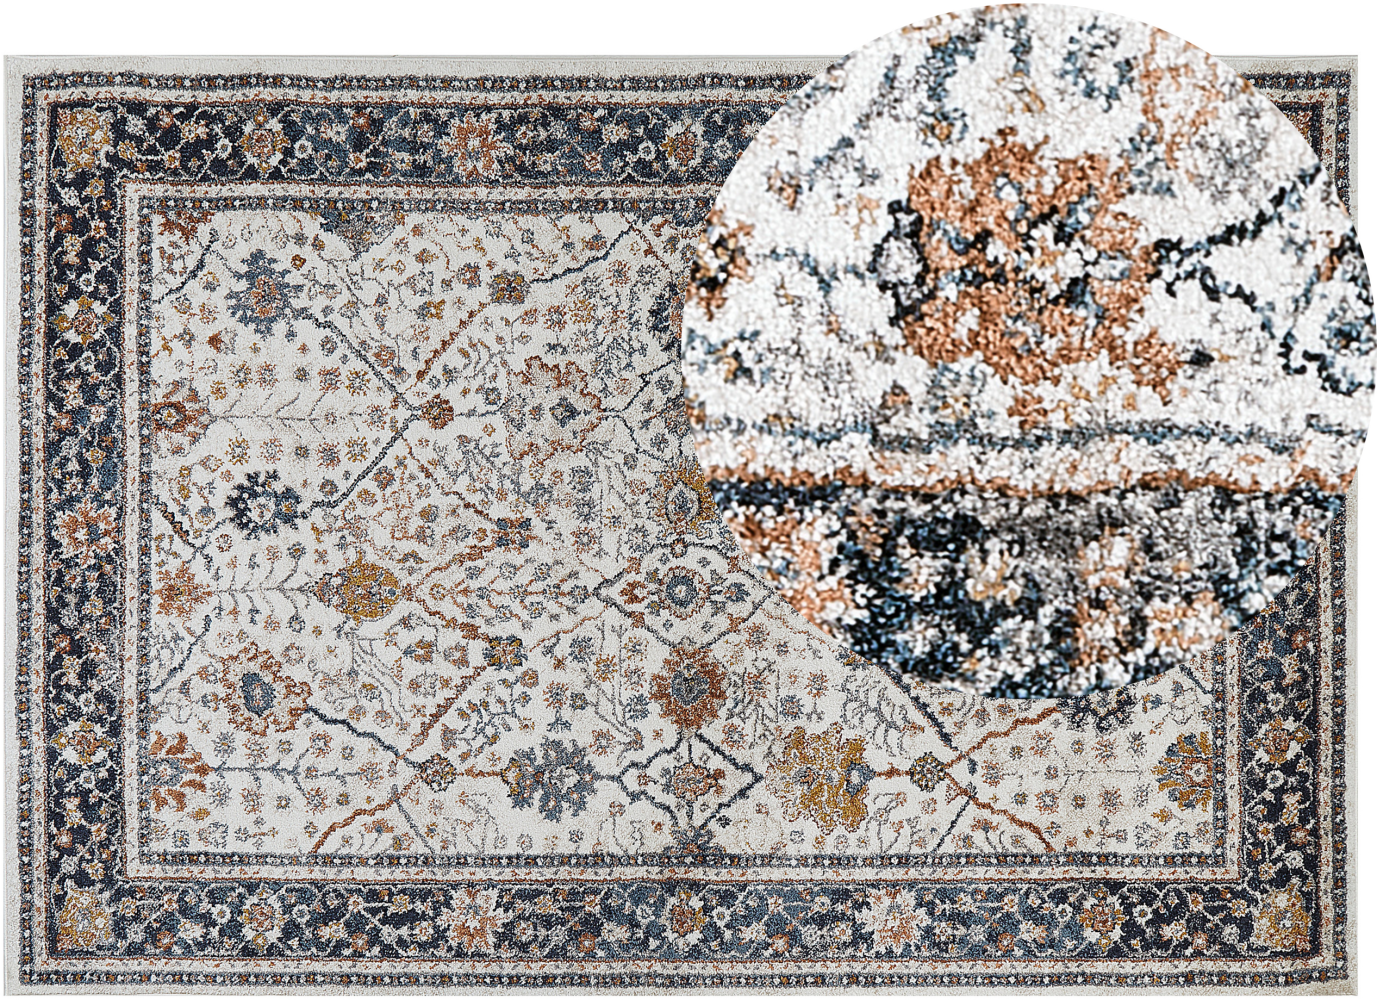 Teppich beige blau orientalisches Muster 160 x 230 cm Kurzflor ARATES Bild 1